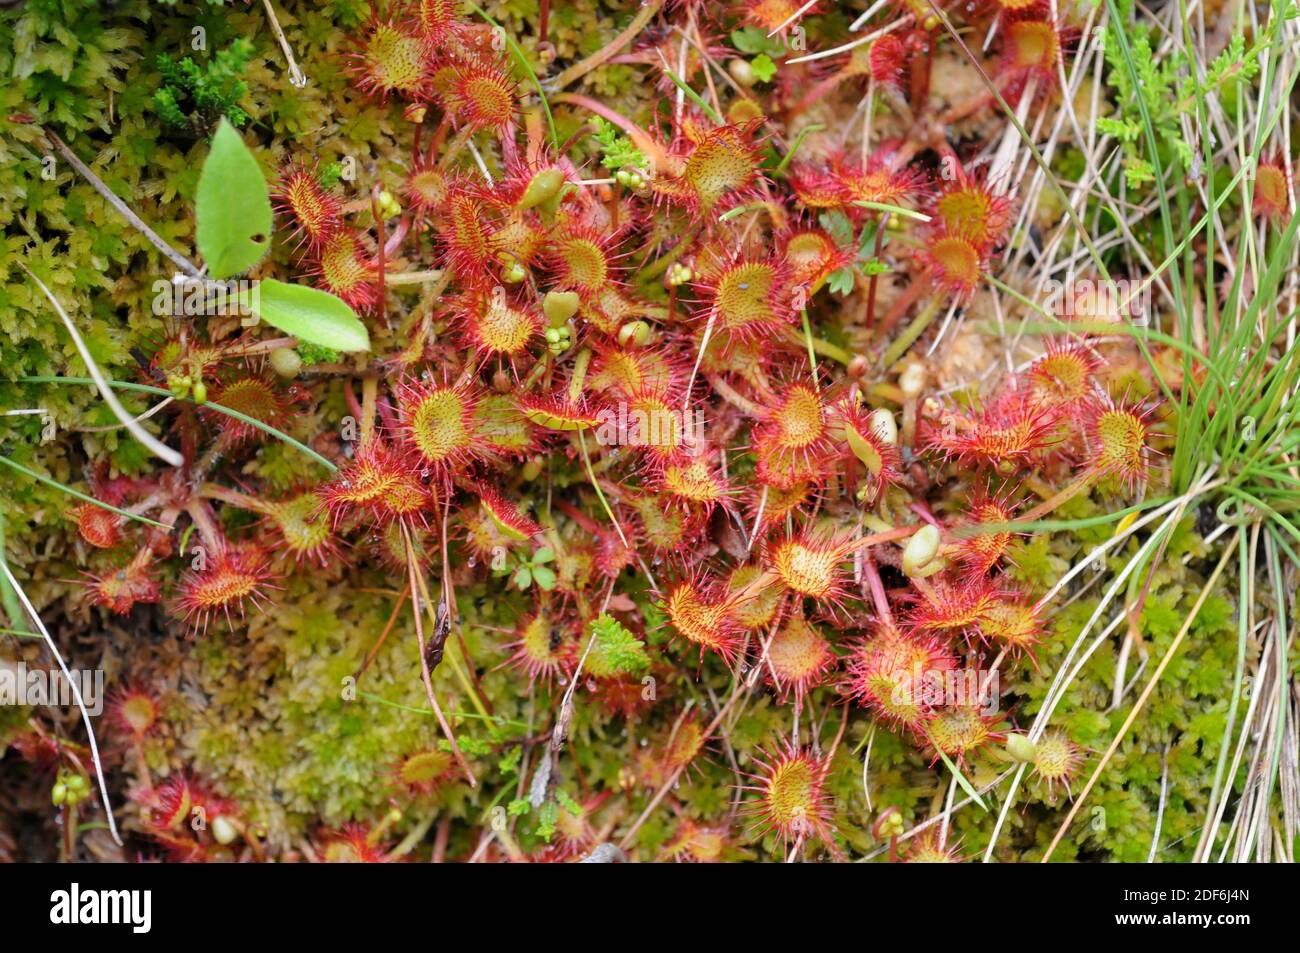 Rugiada in sole comune o rugiada in sole tondo (Drosera rotundifolia) è una pianta carnivora con una distribuzione circumborea ma presente nelle montagne di Foto Stock